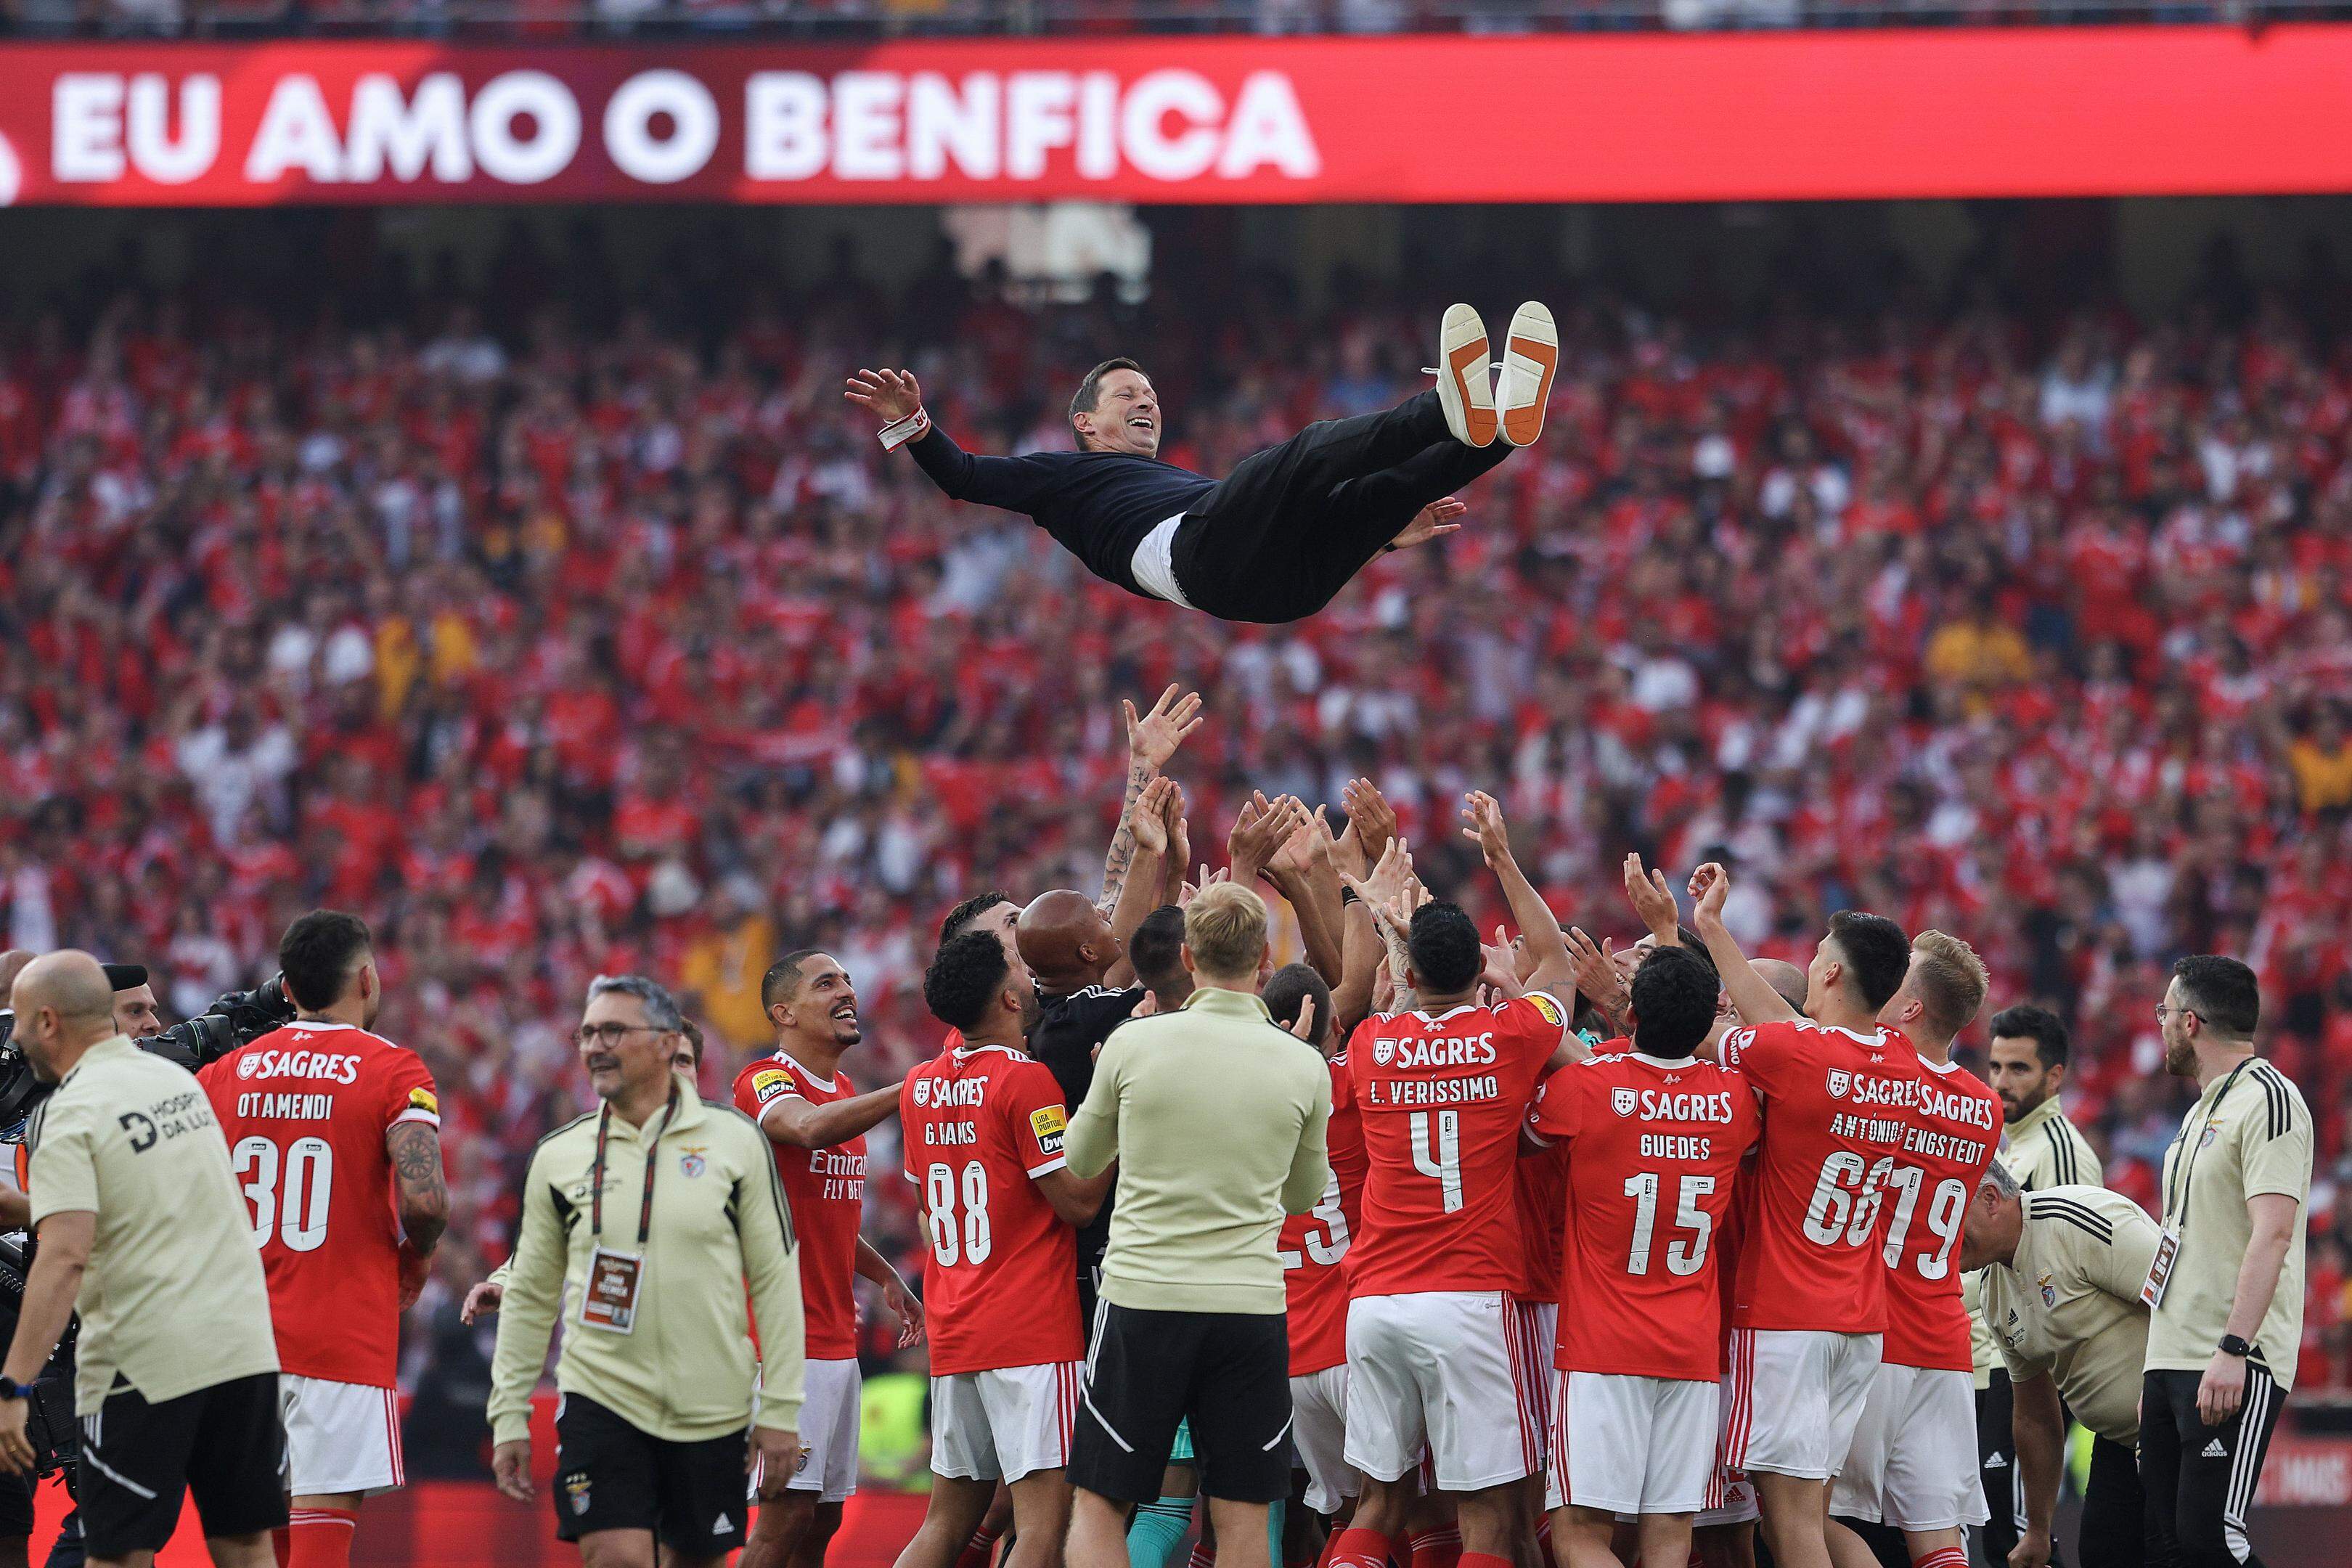 Três-zero vs. Santa Clara. Benfica nas sete quintas